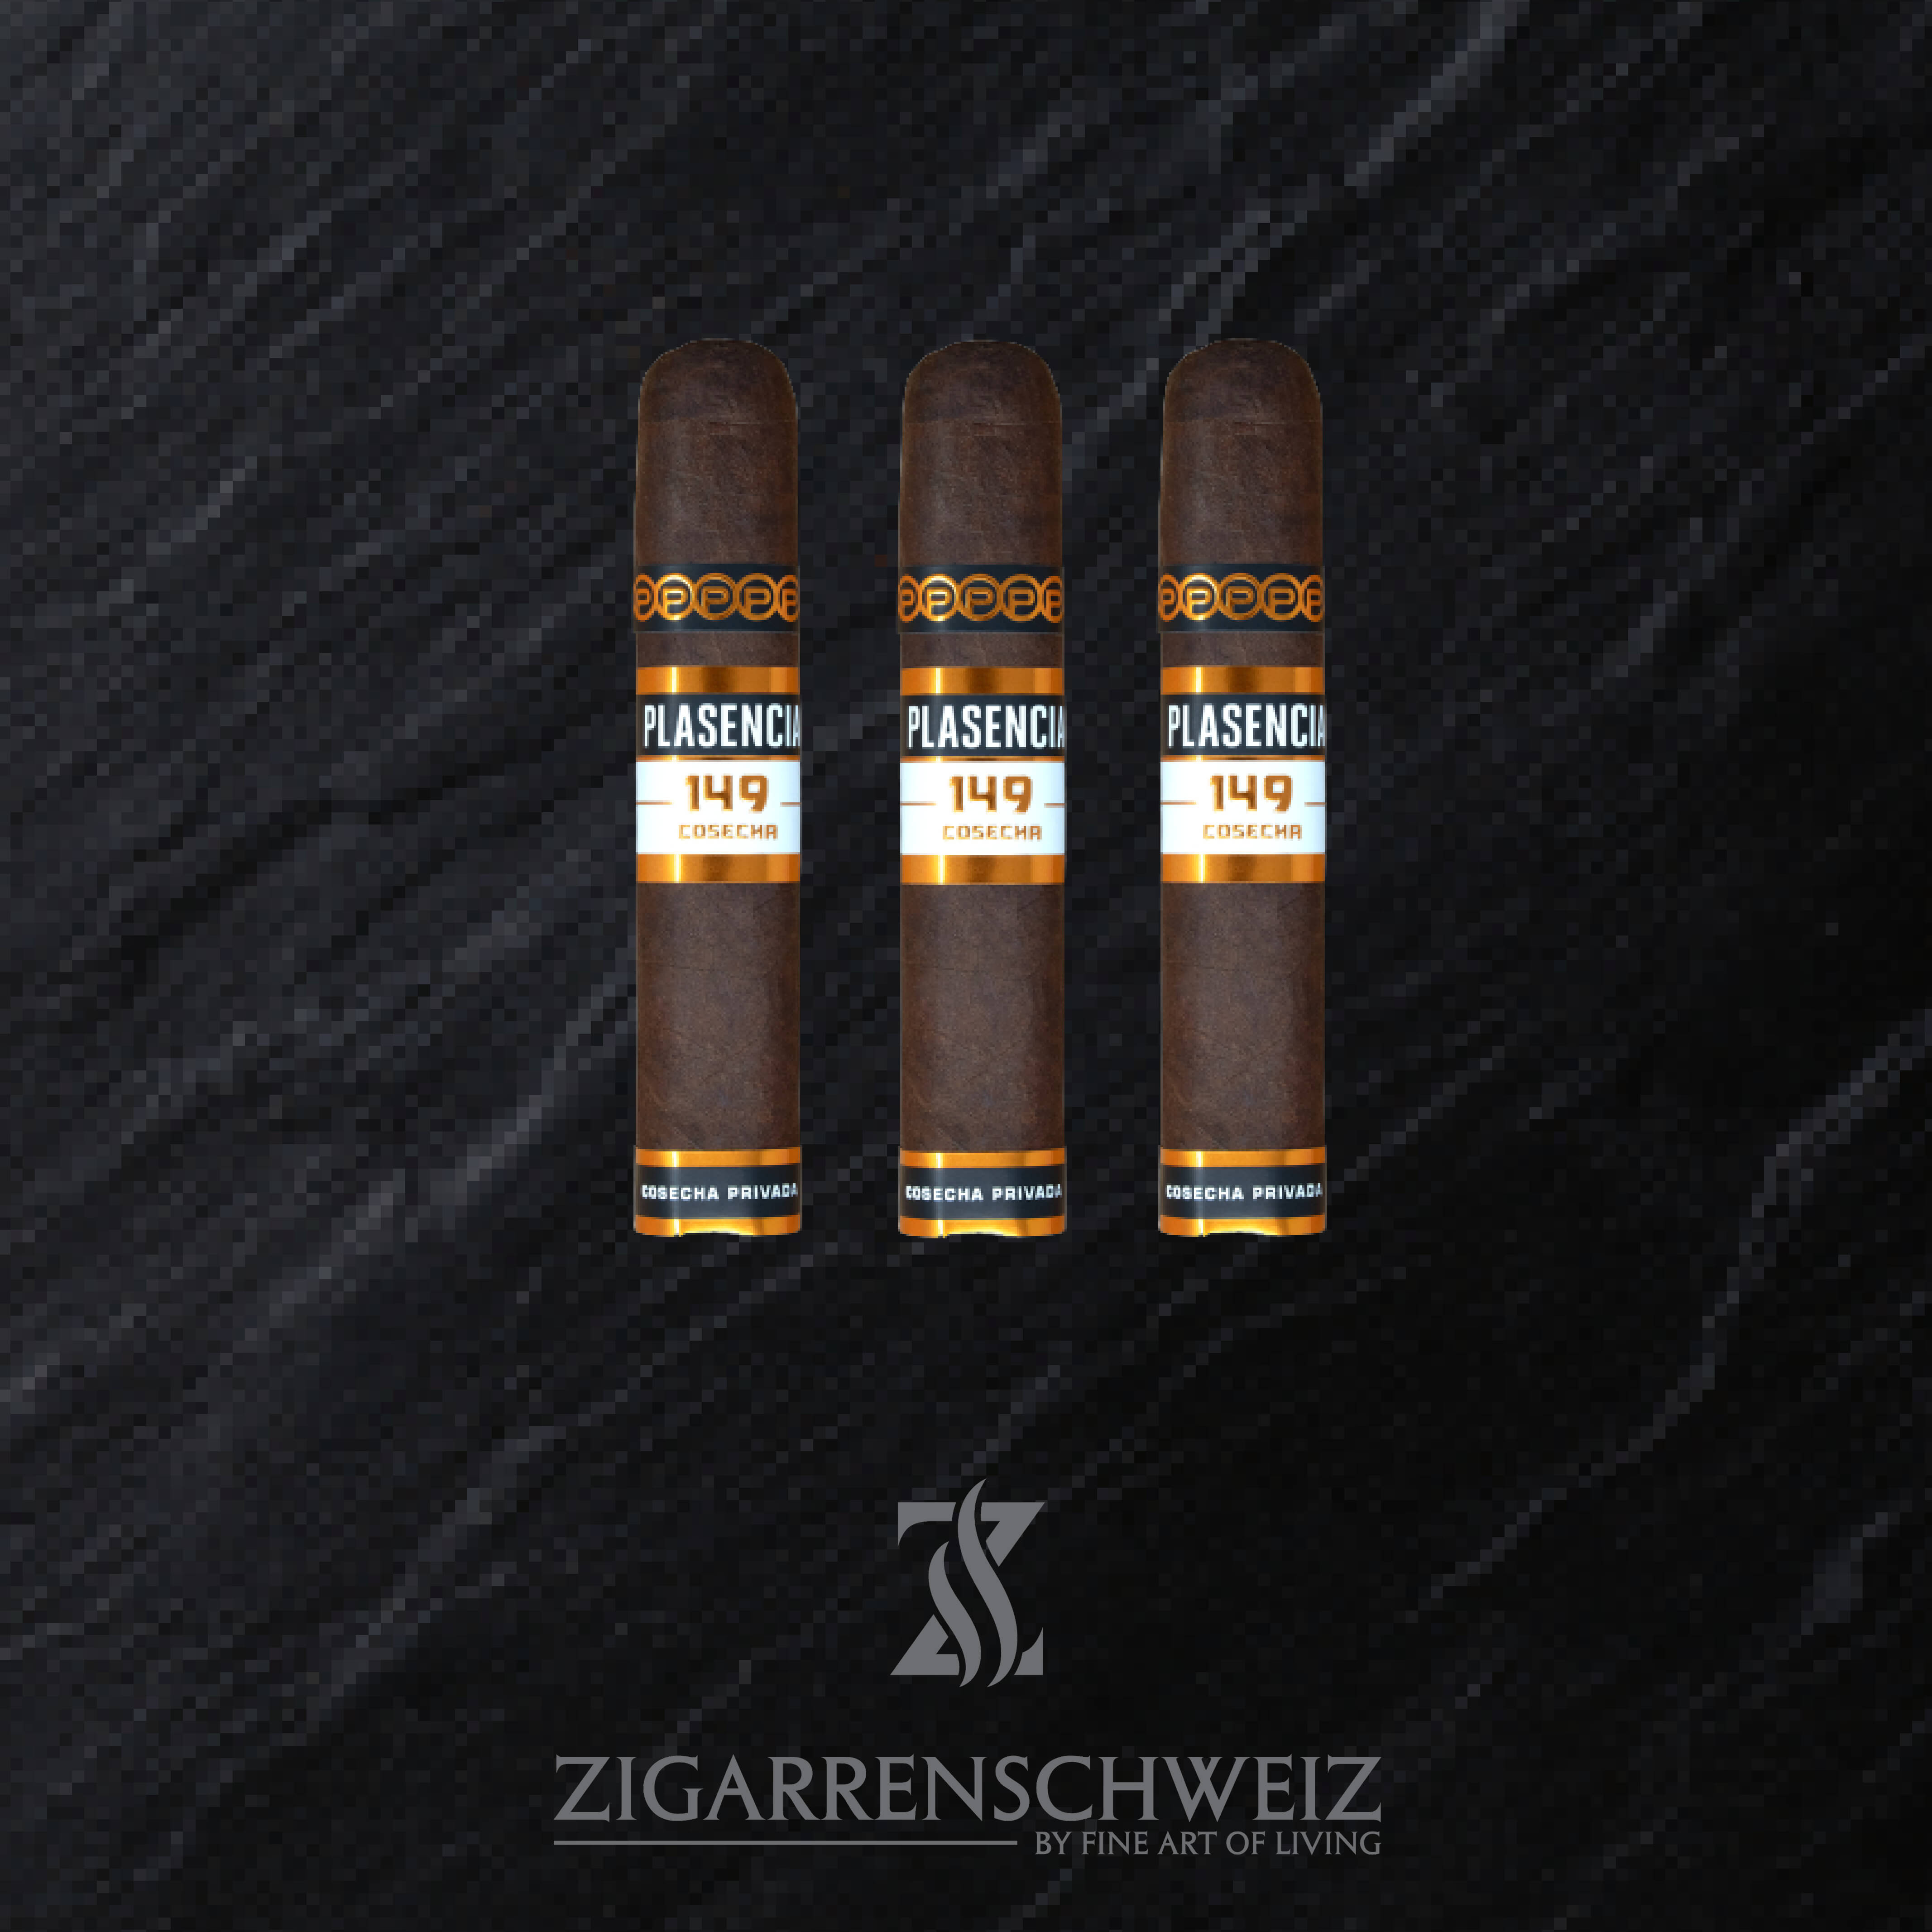 3er Etui Plasencia Cosecha 149 Santa Fe Zigarren im Gordito Format